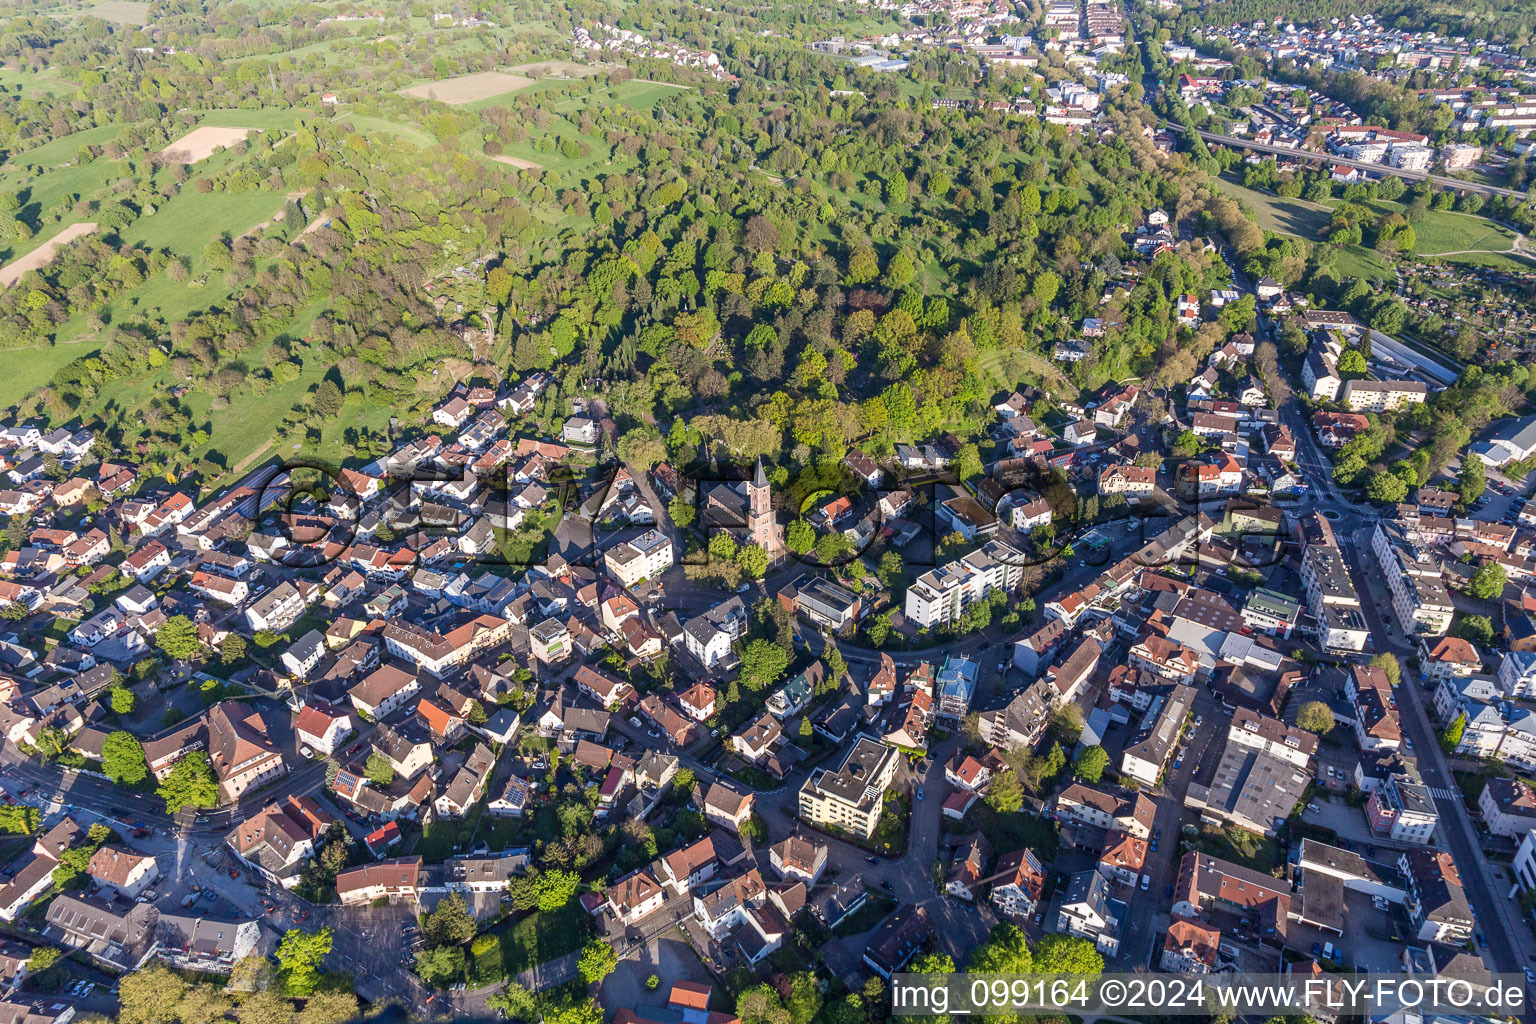 Vue aérienne de Devant la forêt du cimetière à le quartier Oos in Baden-Baden dans le département Bade-Wurtemberg, Allemagne